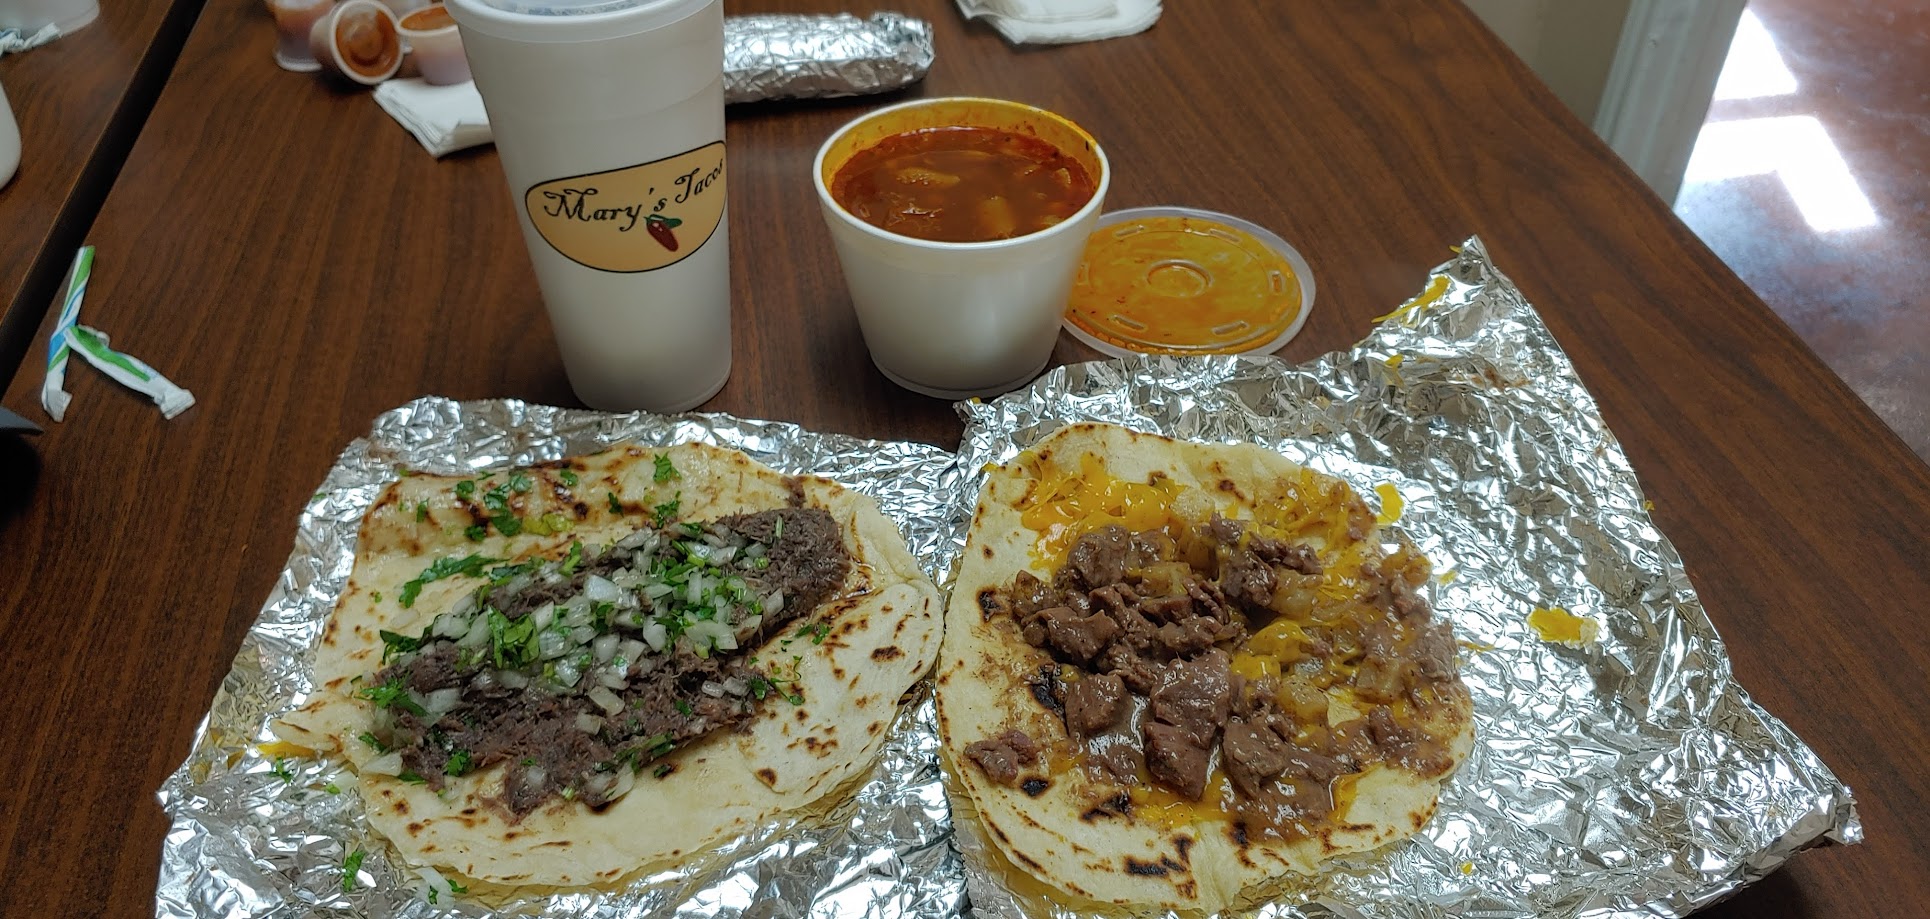 Mary's Tacos